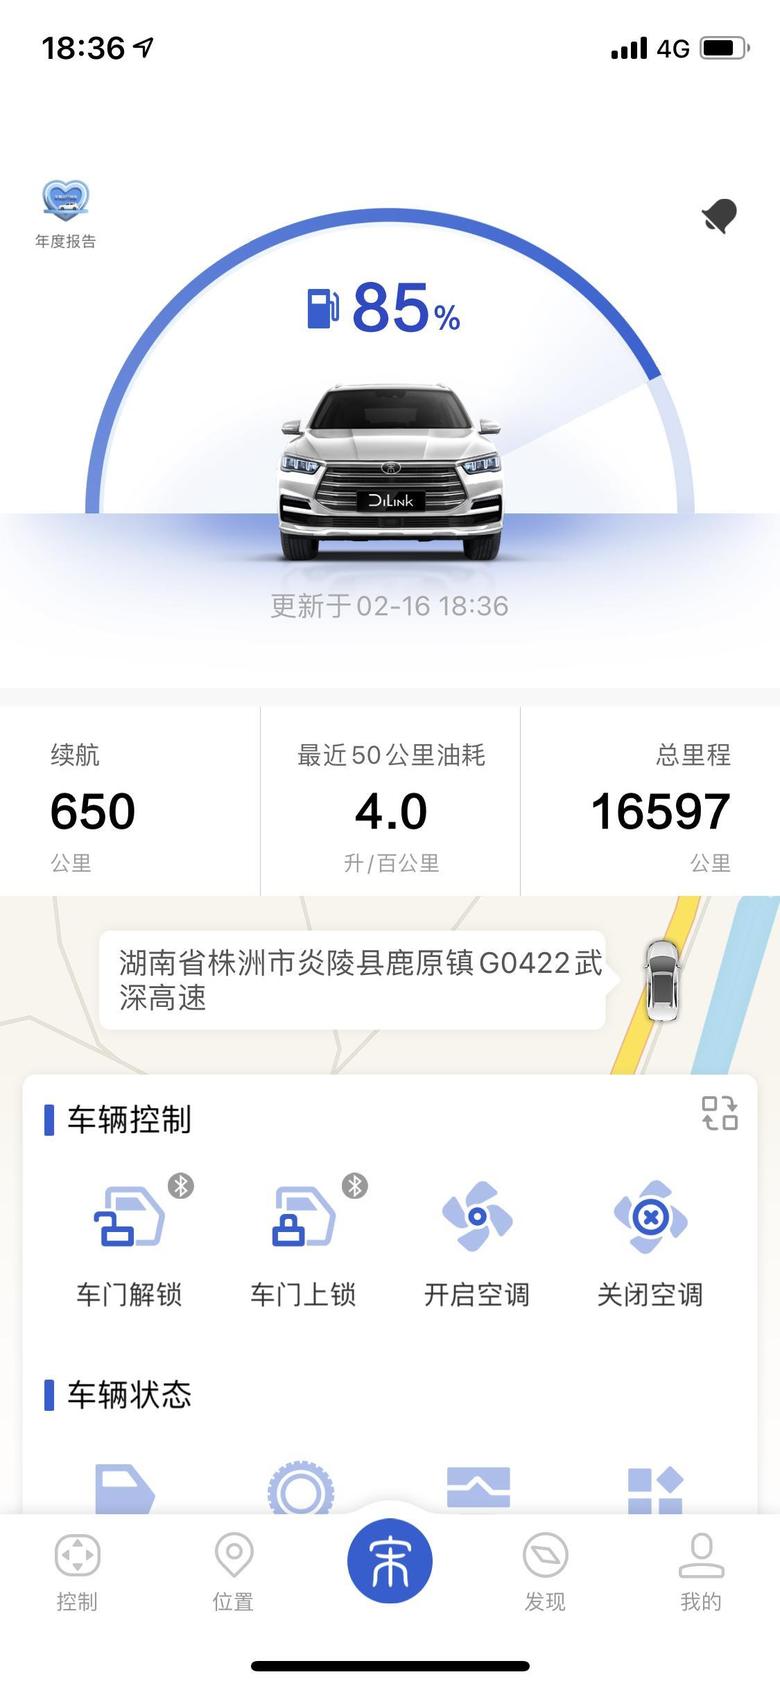 宋pro昨天从深圳到武汉，历史最高记录，武深高速有一段限速100